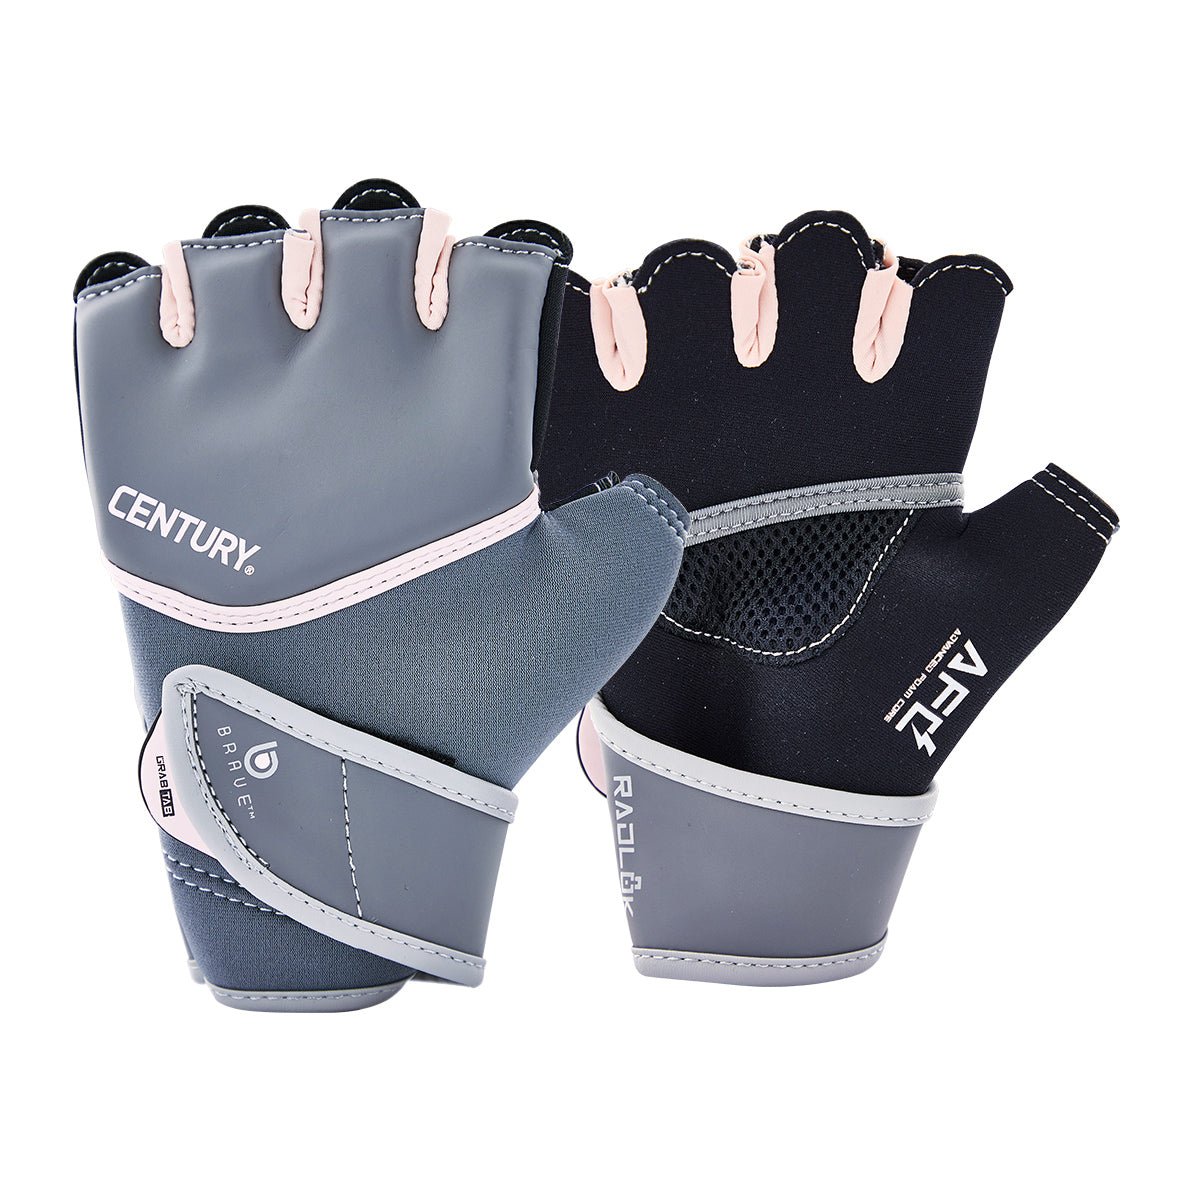 Brave Women's Gel Gloves Grey/Pink